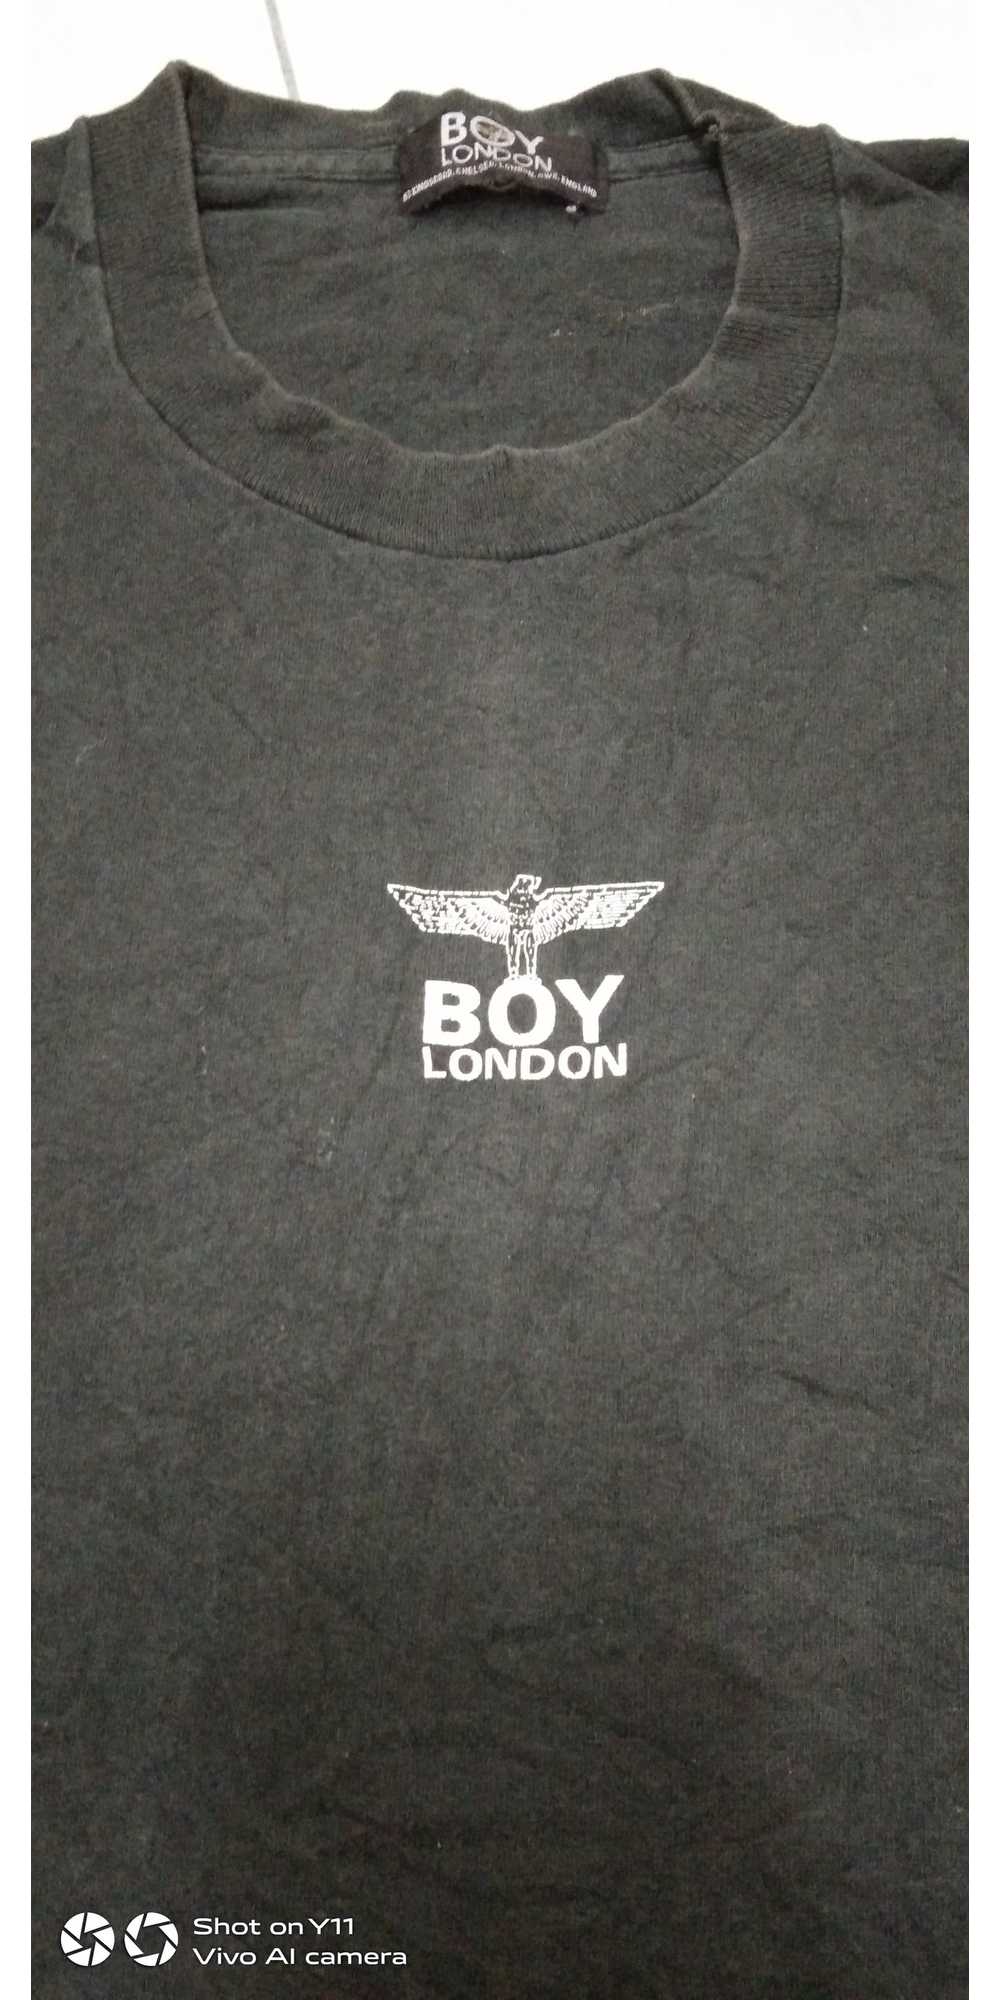 Boy London × Very Rare × Vintage Vtg 90s Boy Lond… - image 2